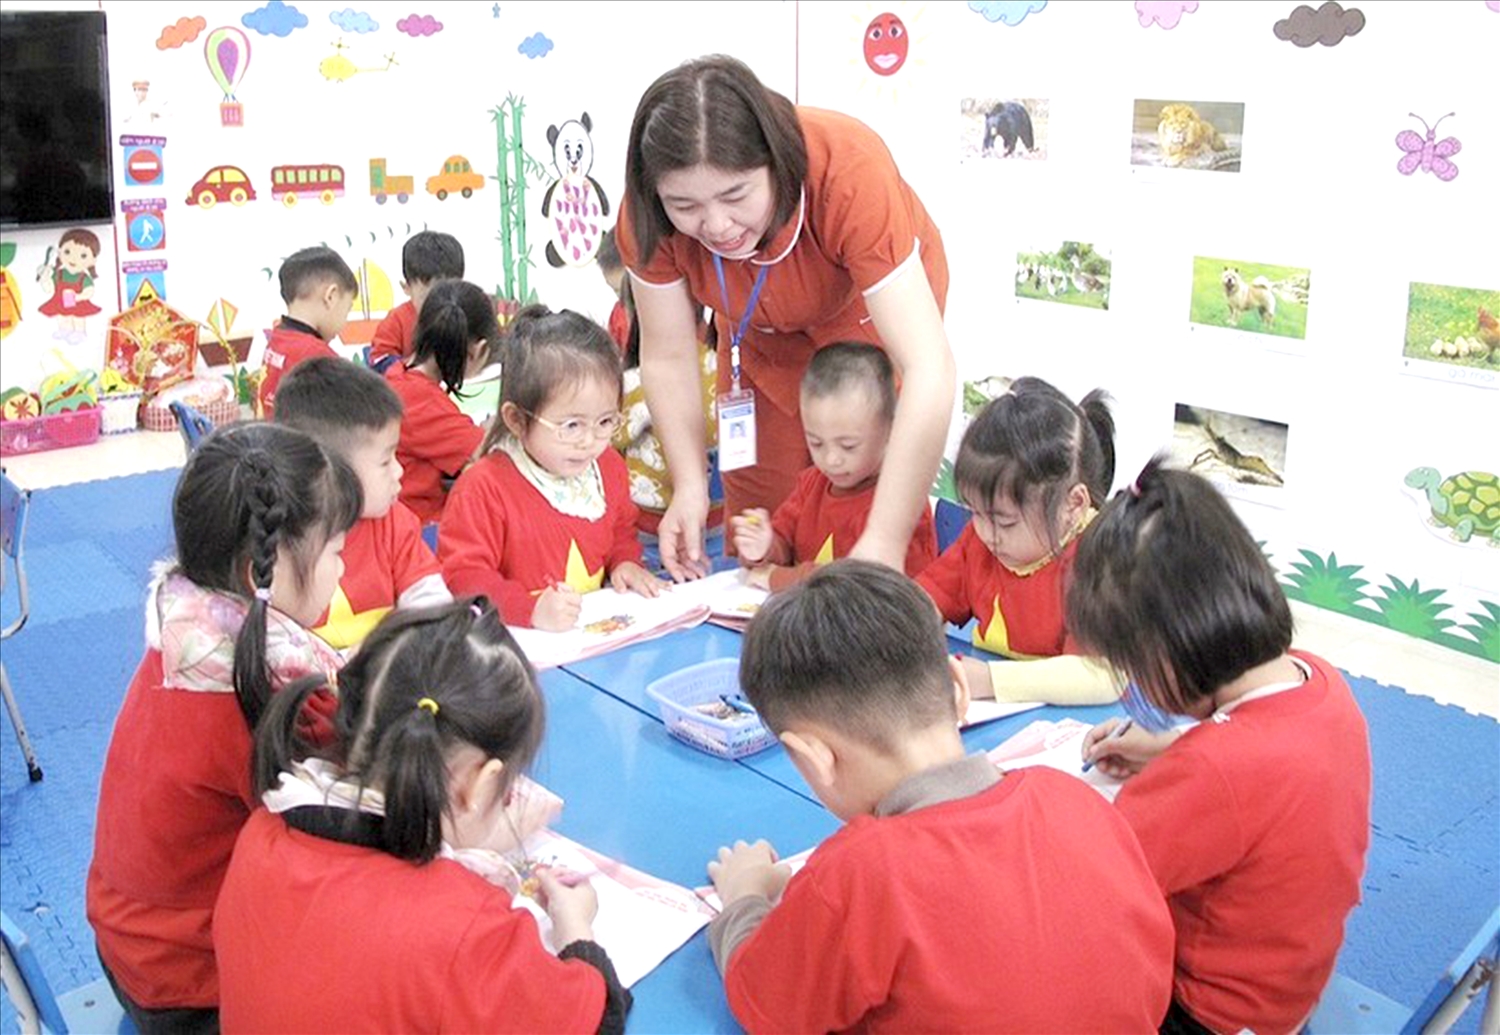 Tỉnh Thái Nguyên đã tập trung tăng cường đầu tư cơ sở vật chất và triển khai chương trình giáo dục mầm non phù hợp với vùng khó khăn, vùng DTTS